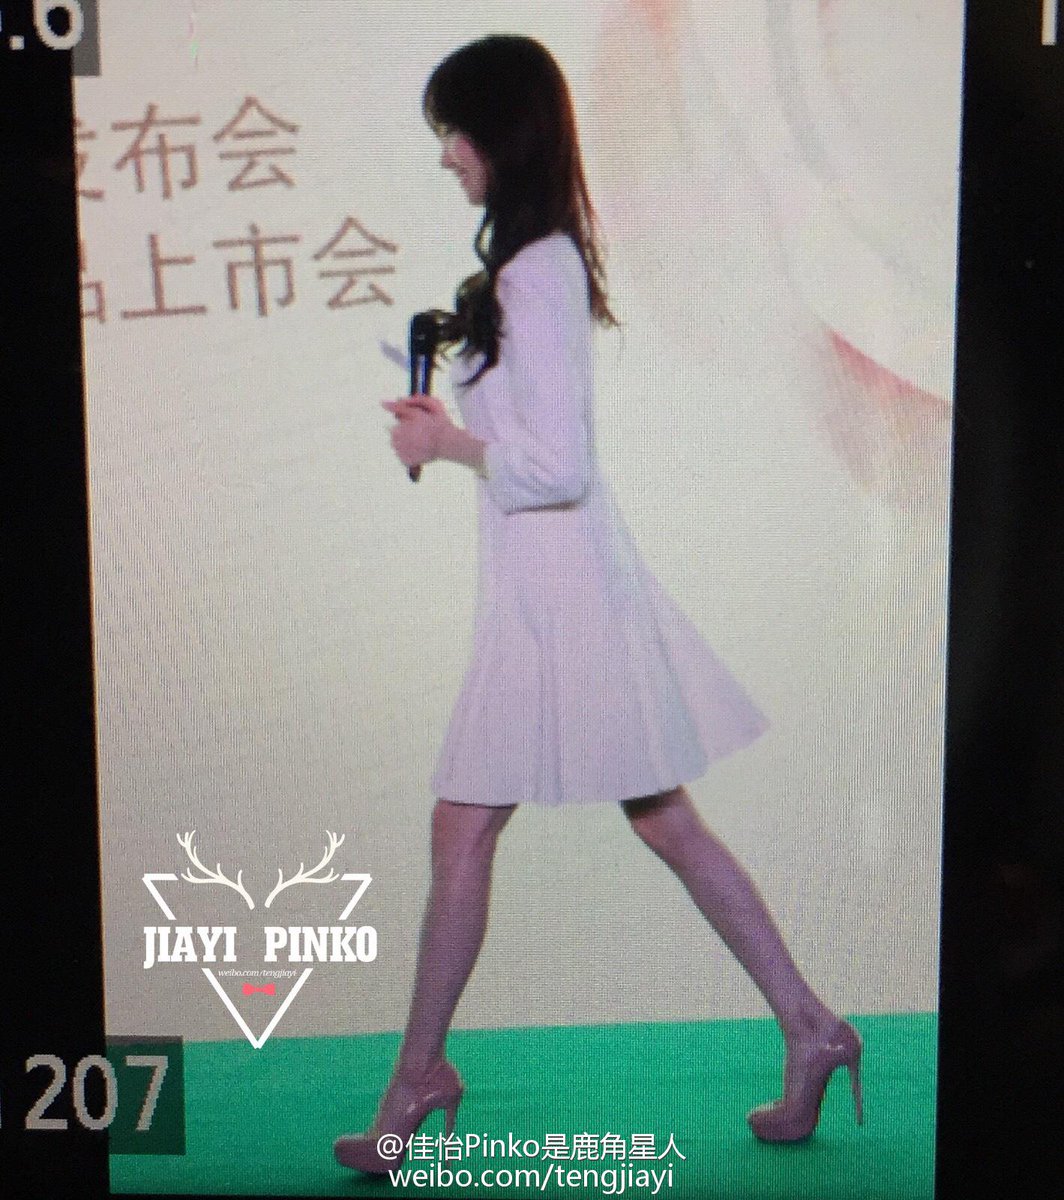 [PIC][15-01-2015]YoonA xuất hiện tại Thượng Hải - Trung Quốc để quảng bá cho sản phẩm mới của thương hiệu "Innisfree" vào trưa nay - Page 2 B7YS4A9CQAADSZ0